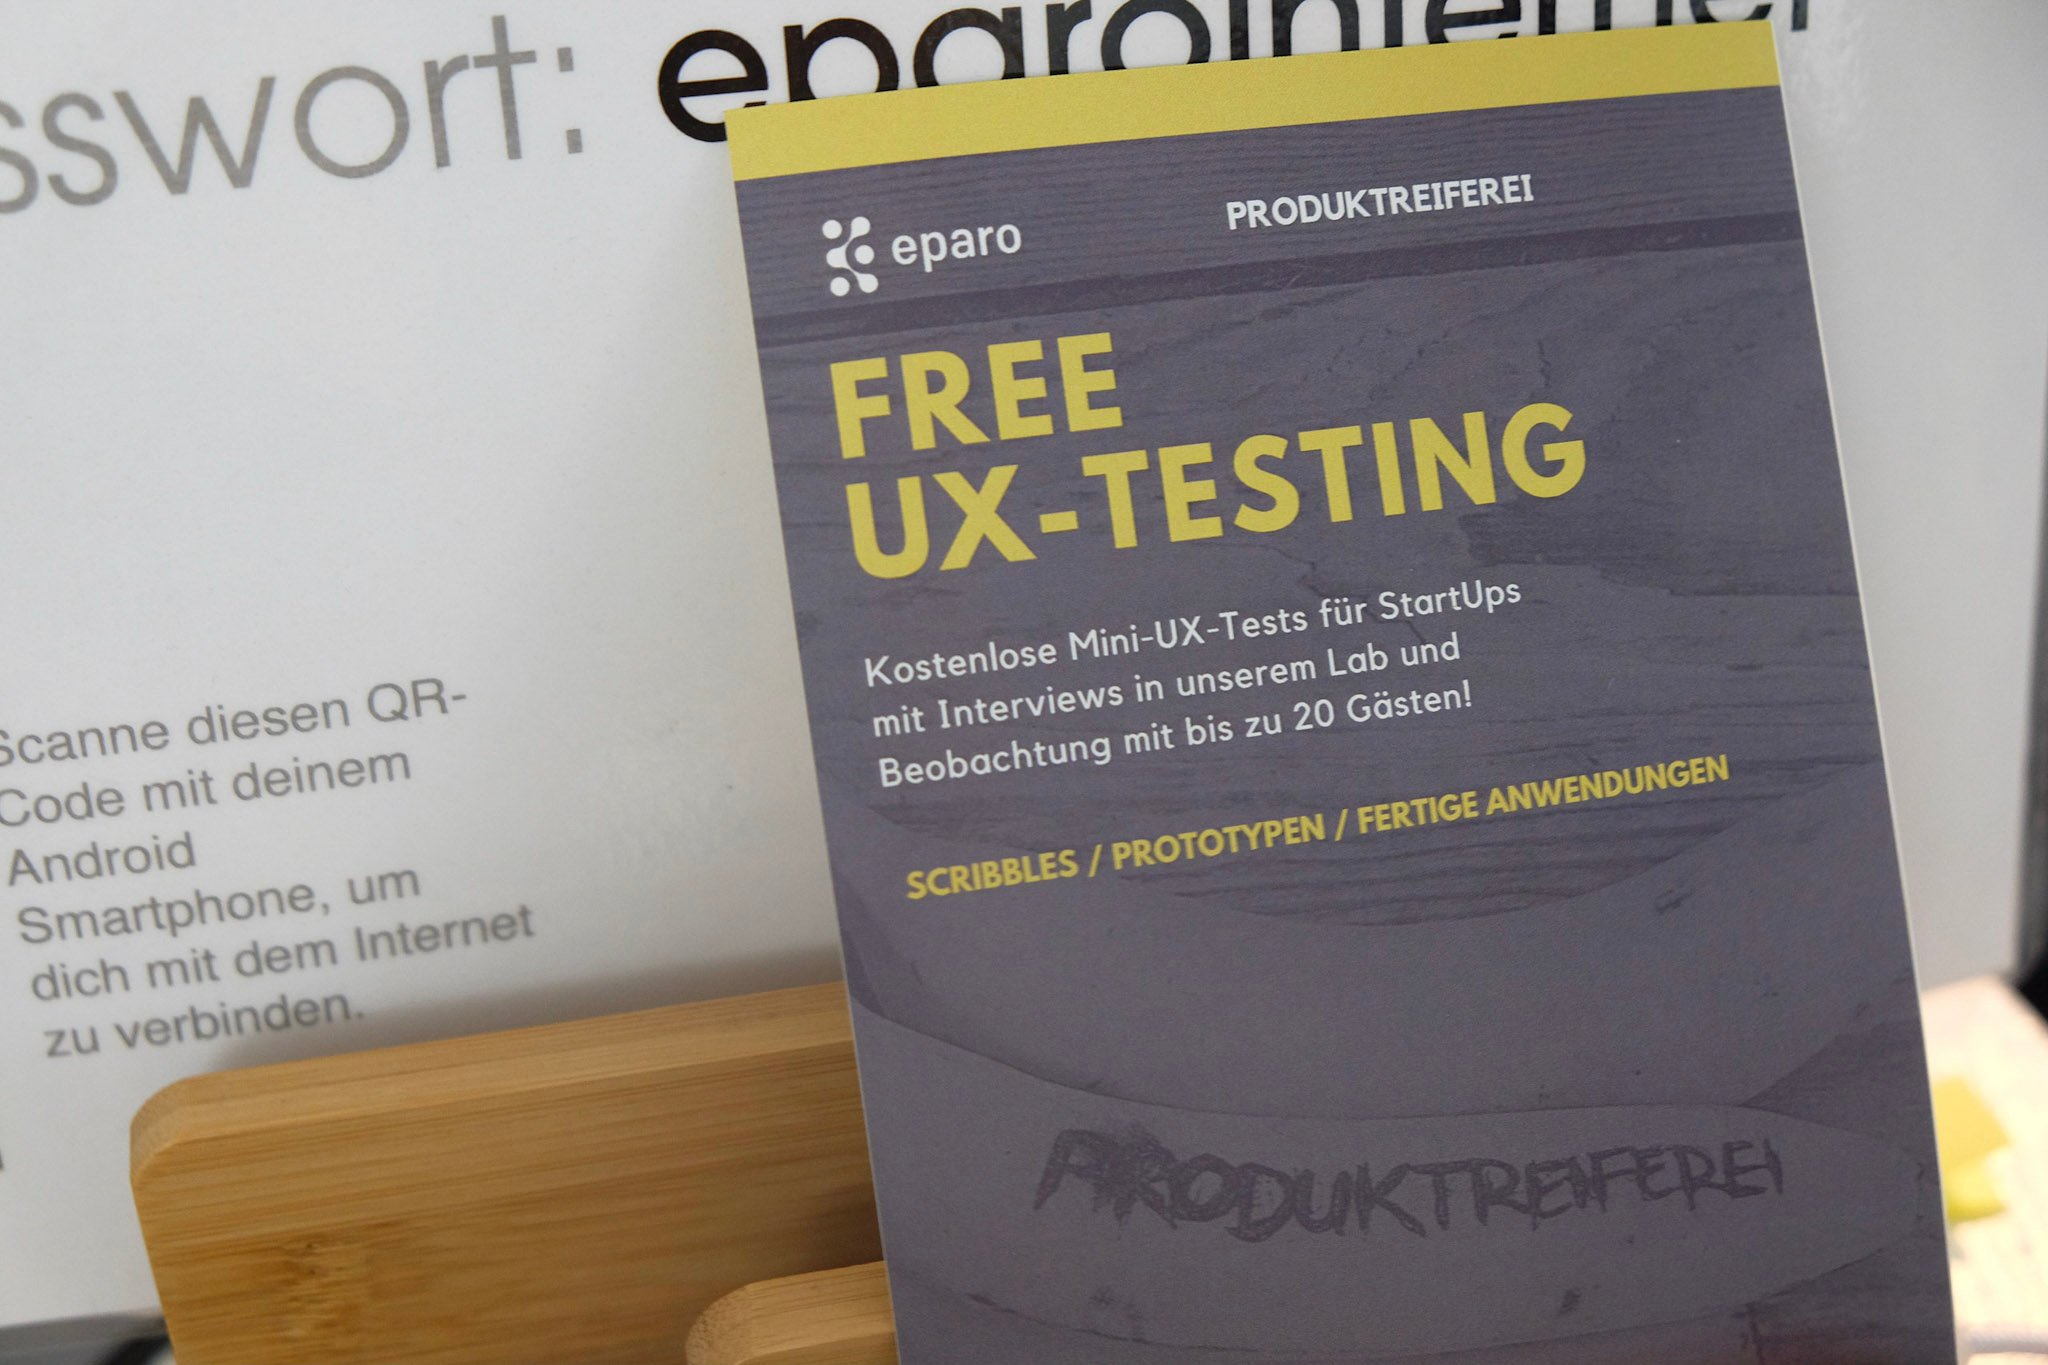 Flyer Kostenlose Mini-UX Tests für Start-Ups